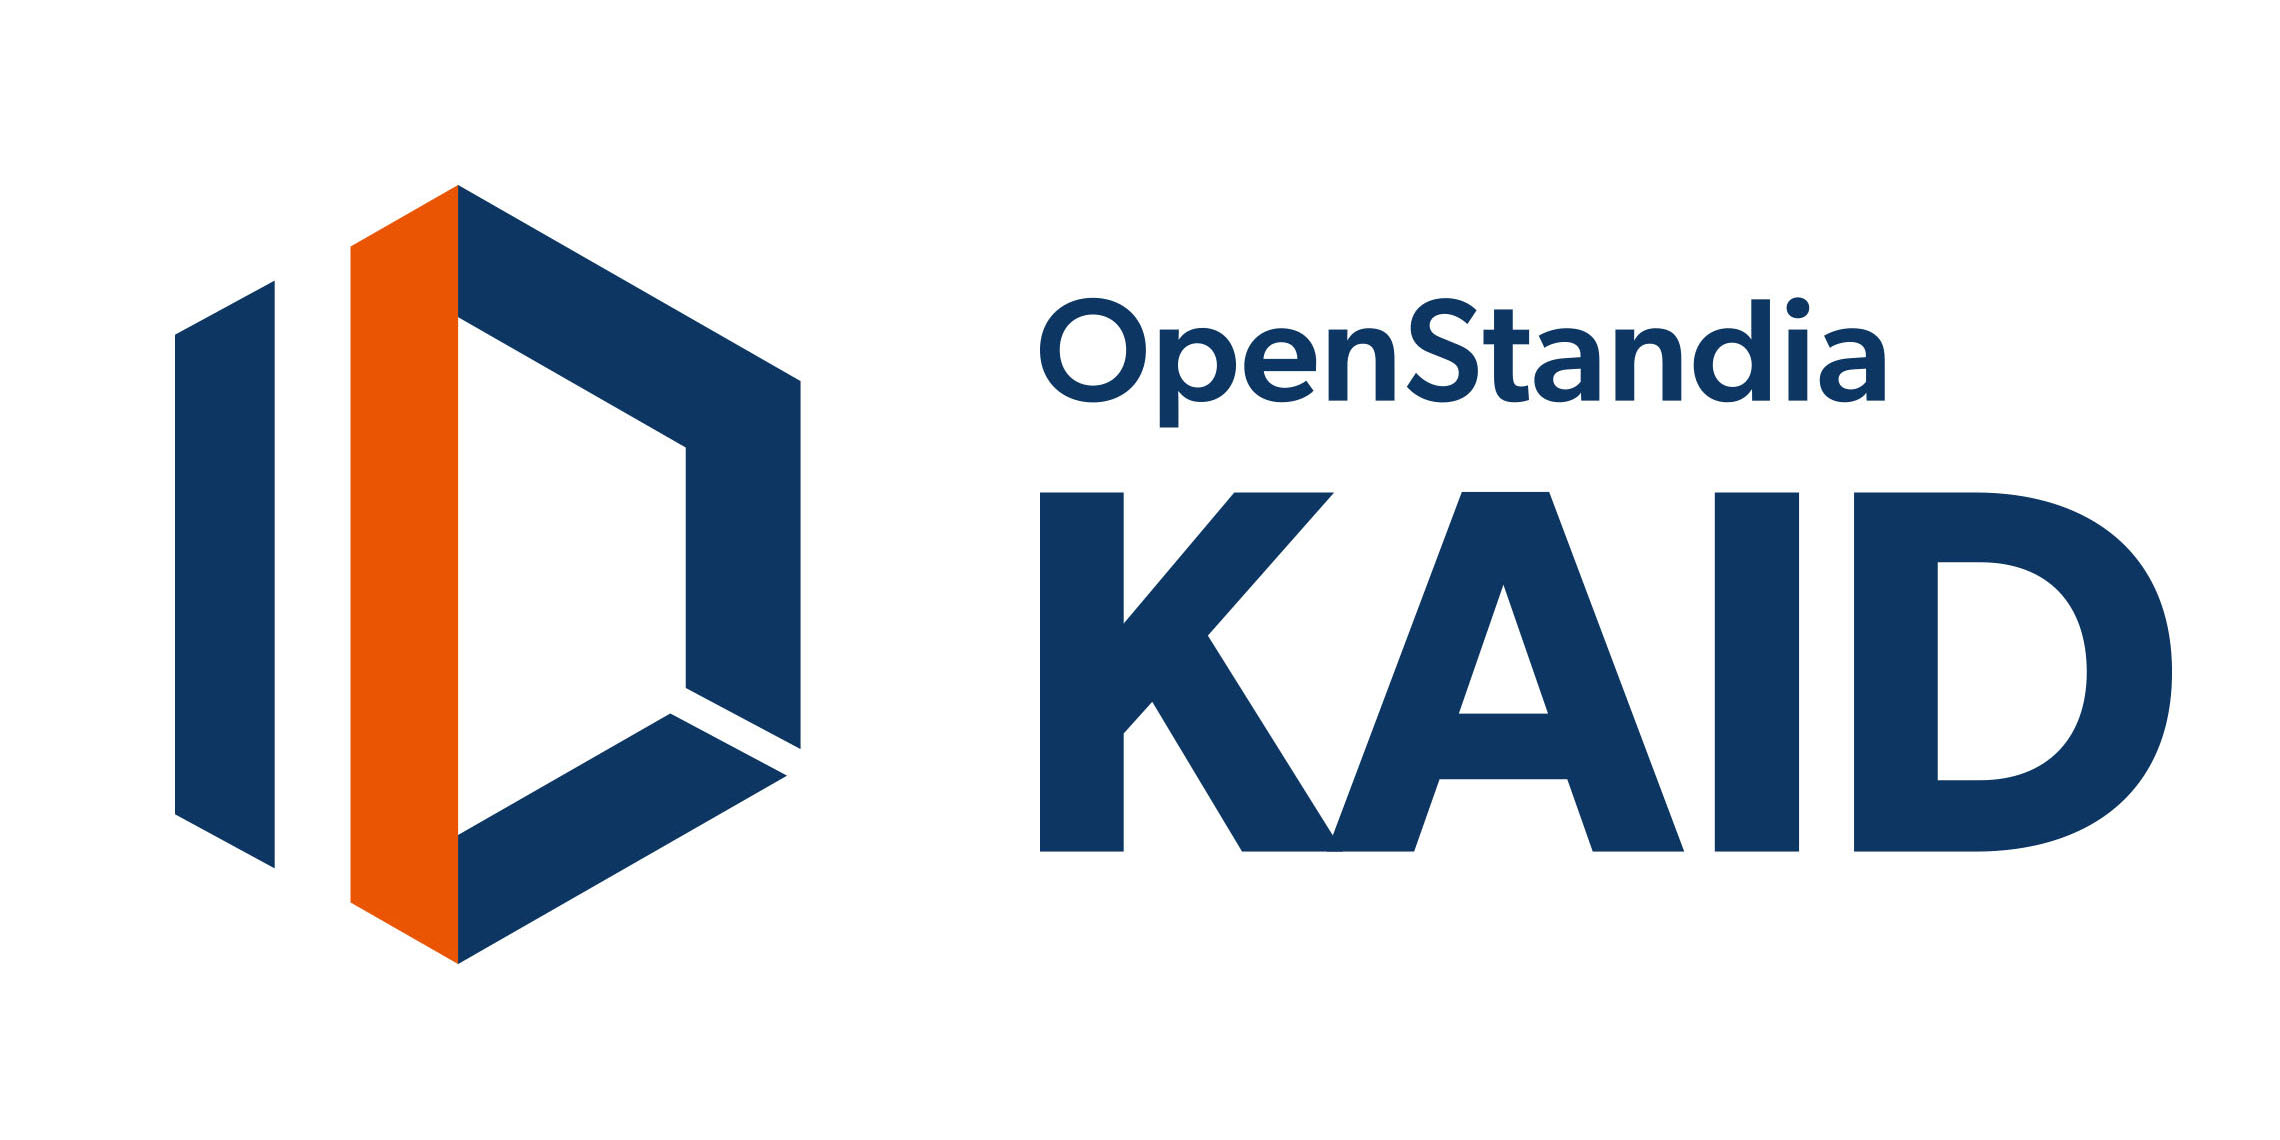 OpenStandia KAID （オープンスタンディア カイド）